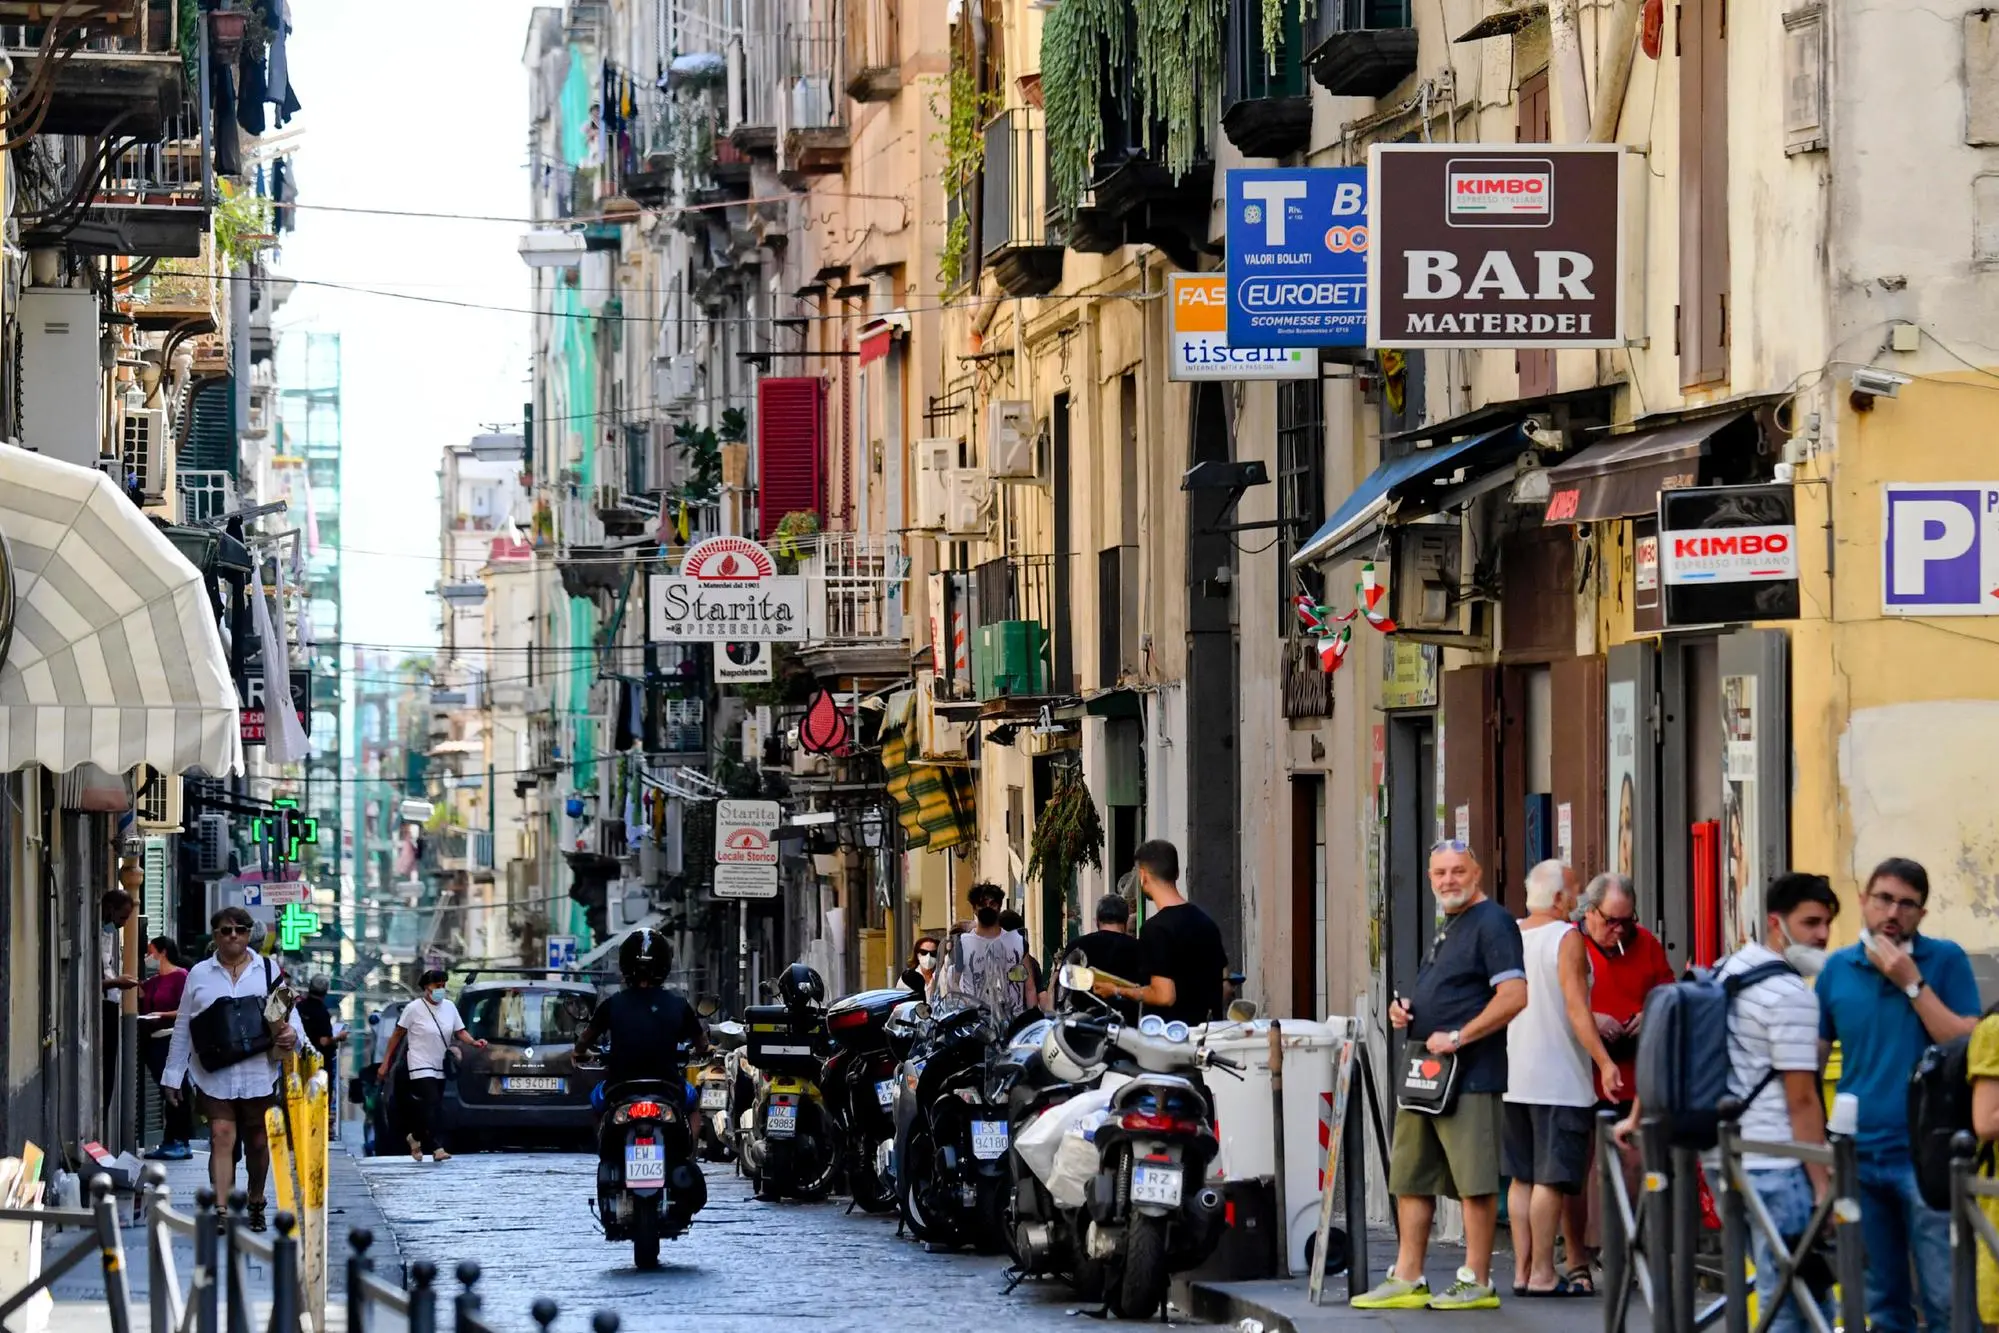 La tabaccheria di via Materdei a Napoli dove è stato sottratto il Gratta e vinci (Ansa)